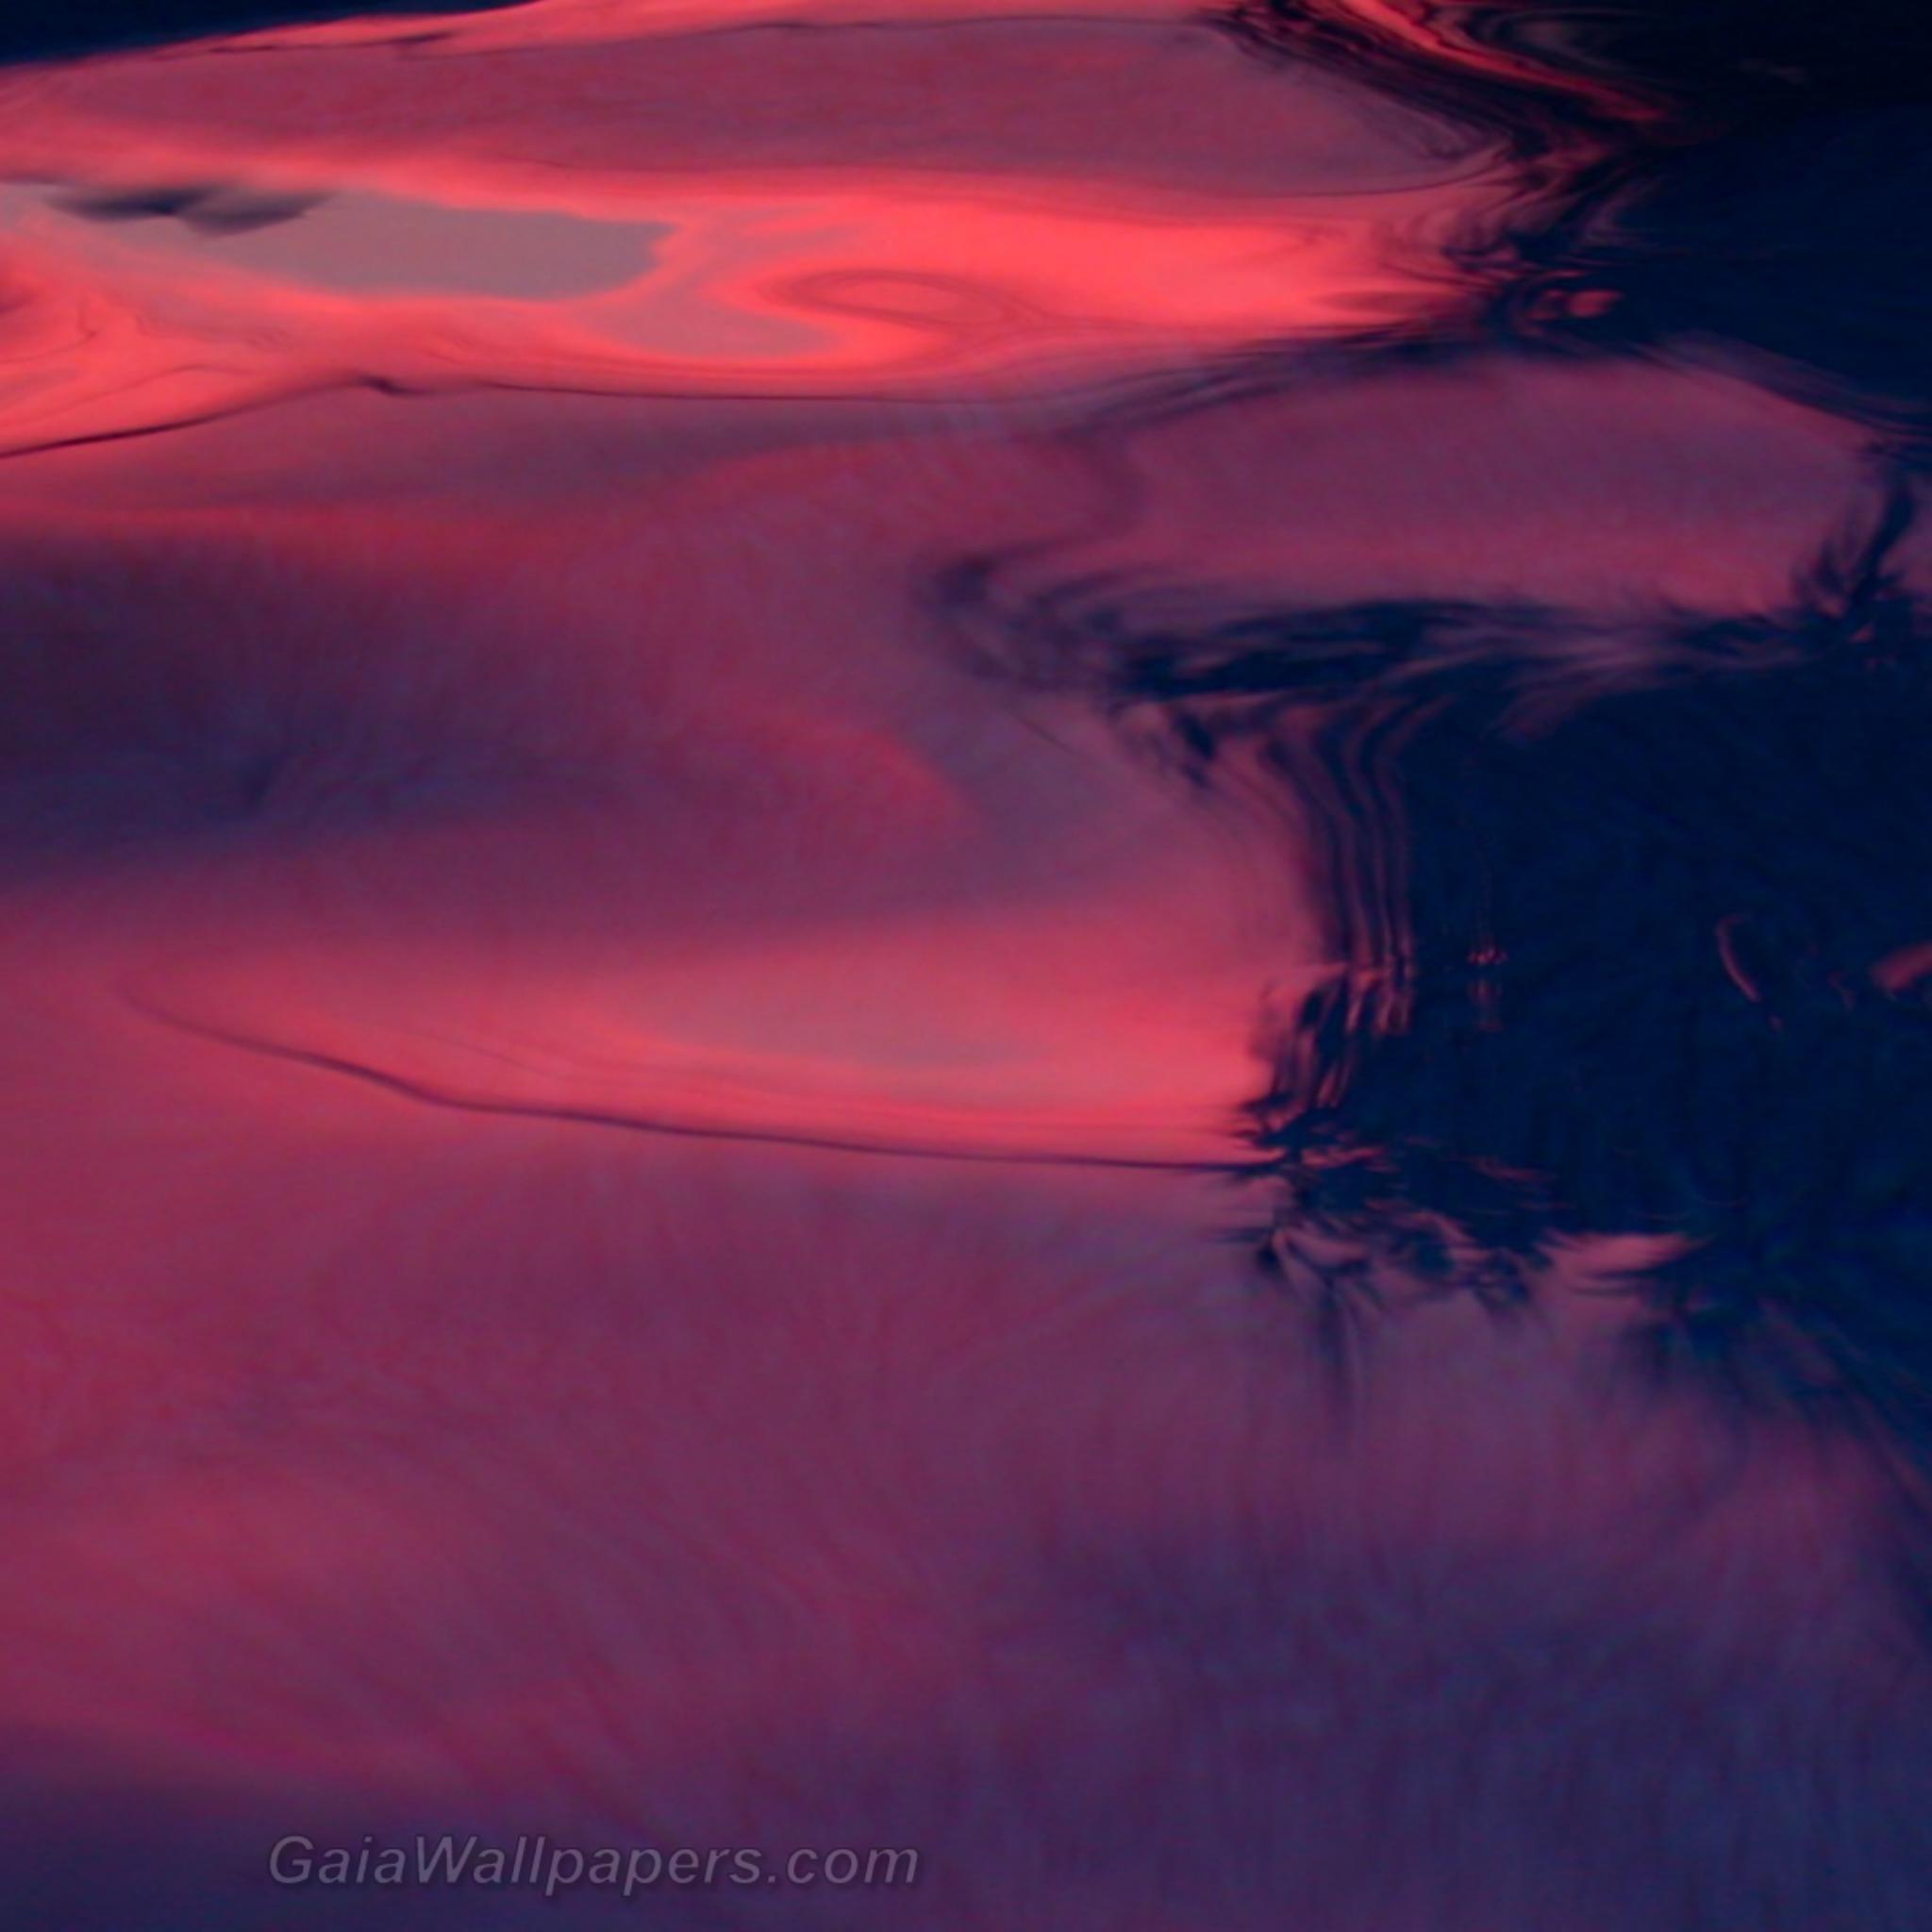 Lumière rose du coucher de soleil dans la piscine - Fonds d'écran gratuits